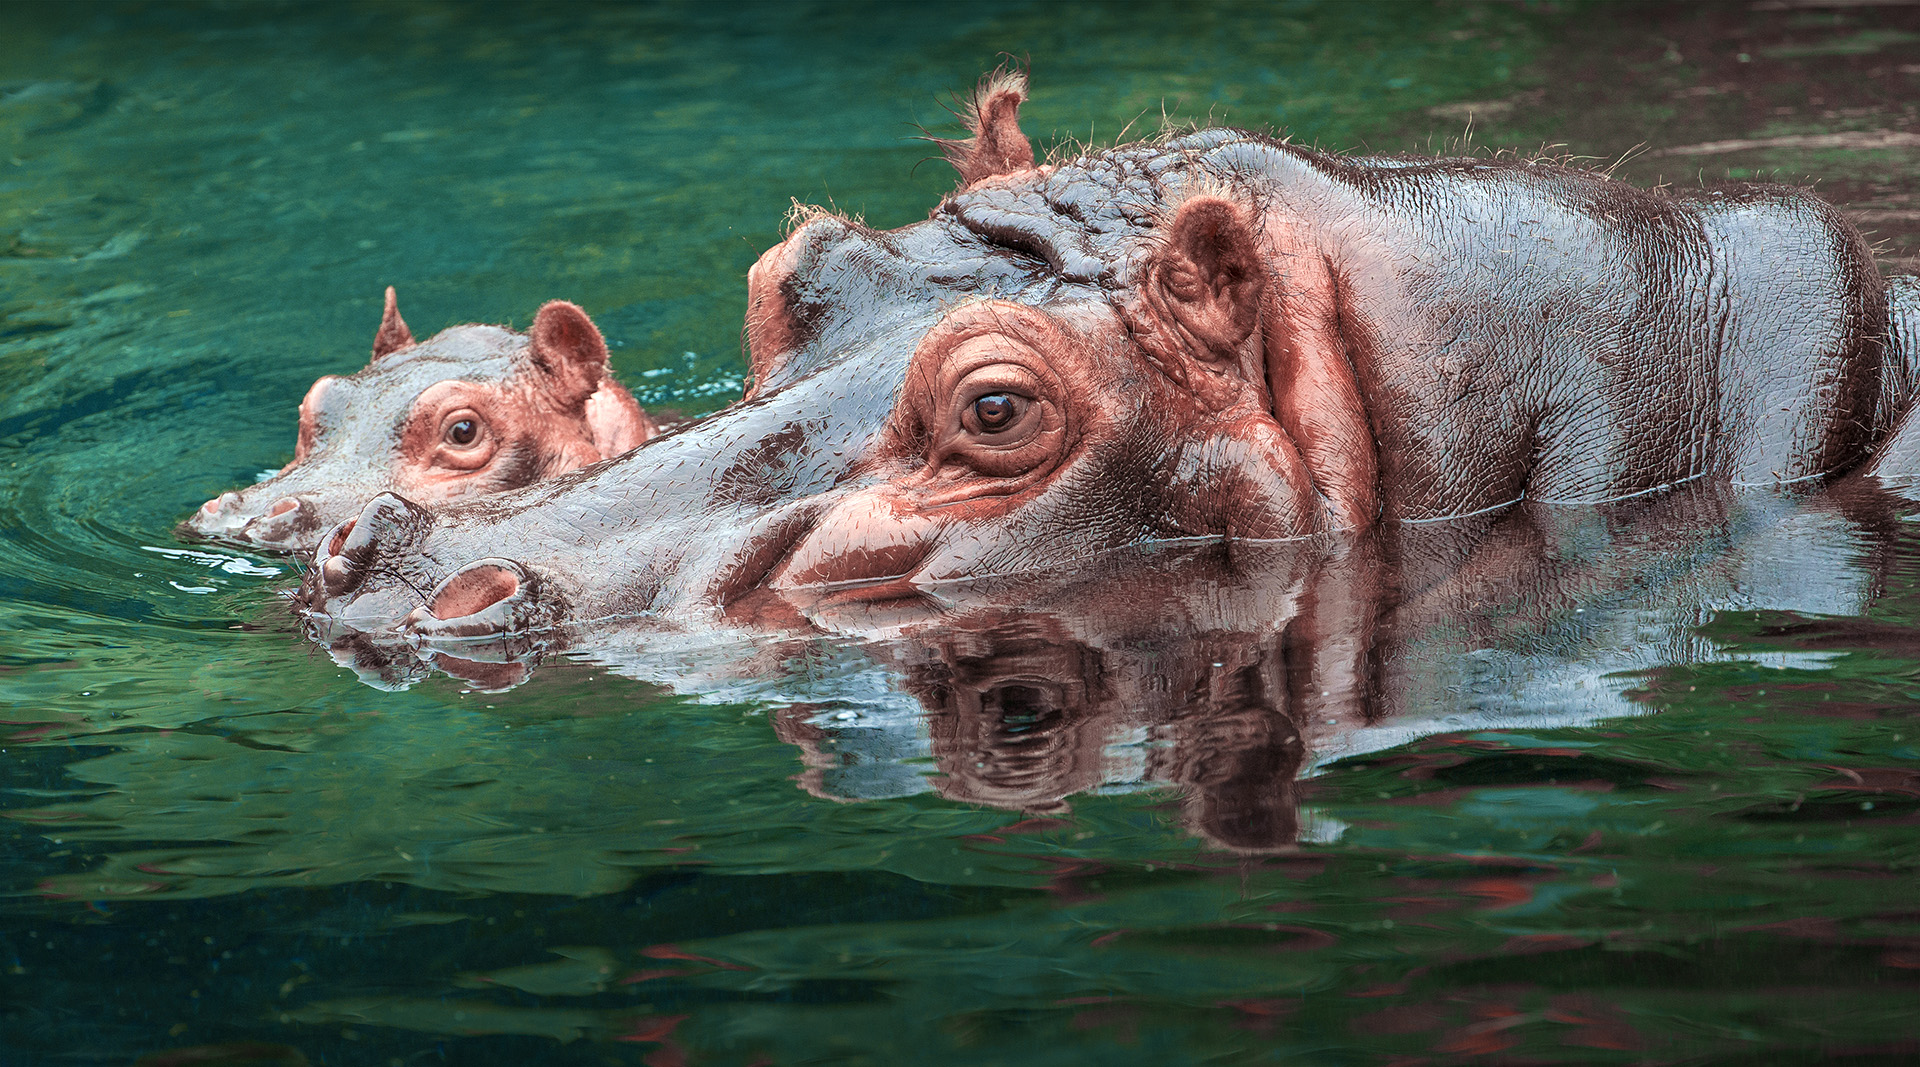 Hippopotamus mom and baby swimming